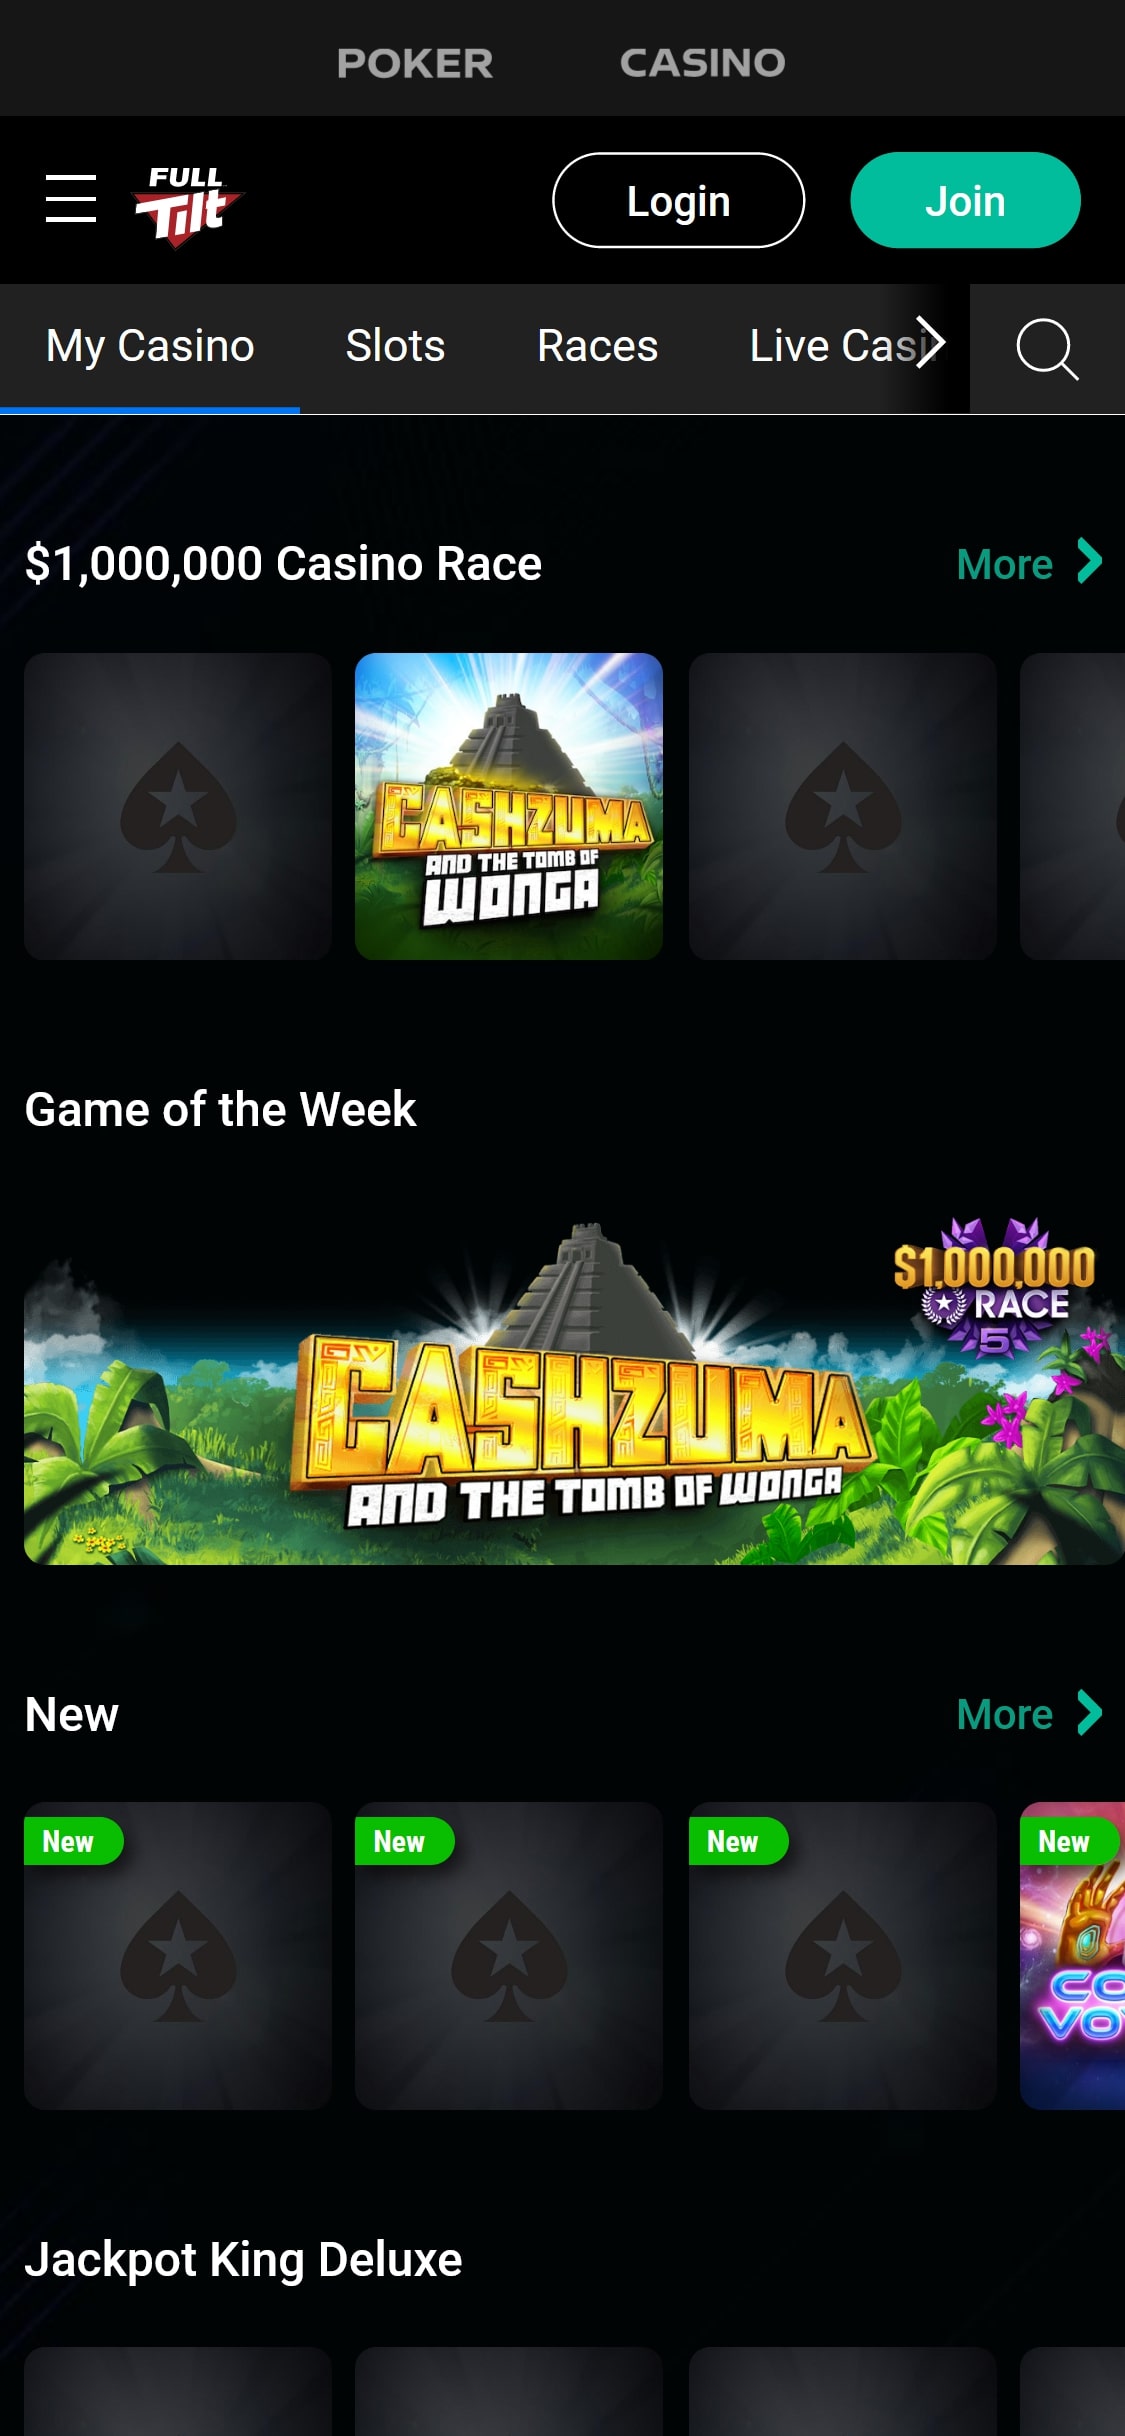 Full Tilt Casino Mobile Games Review